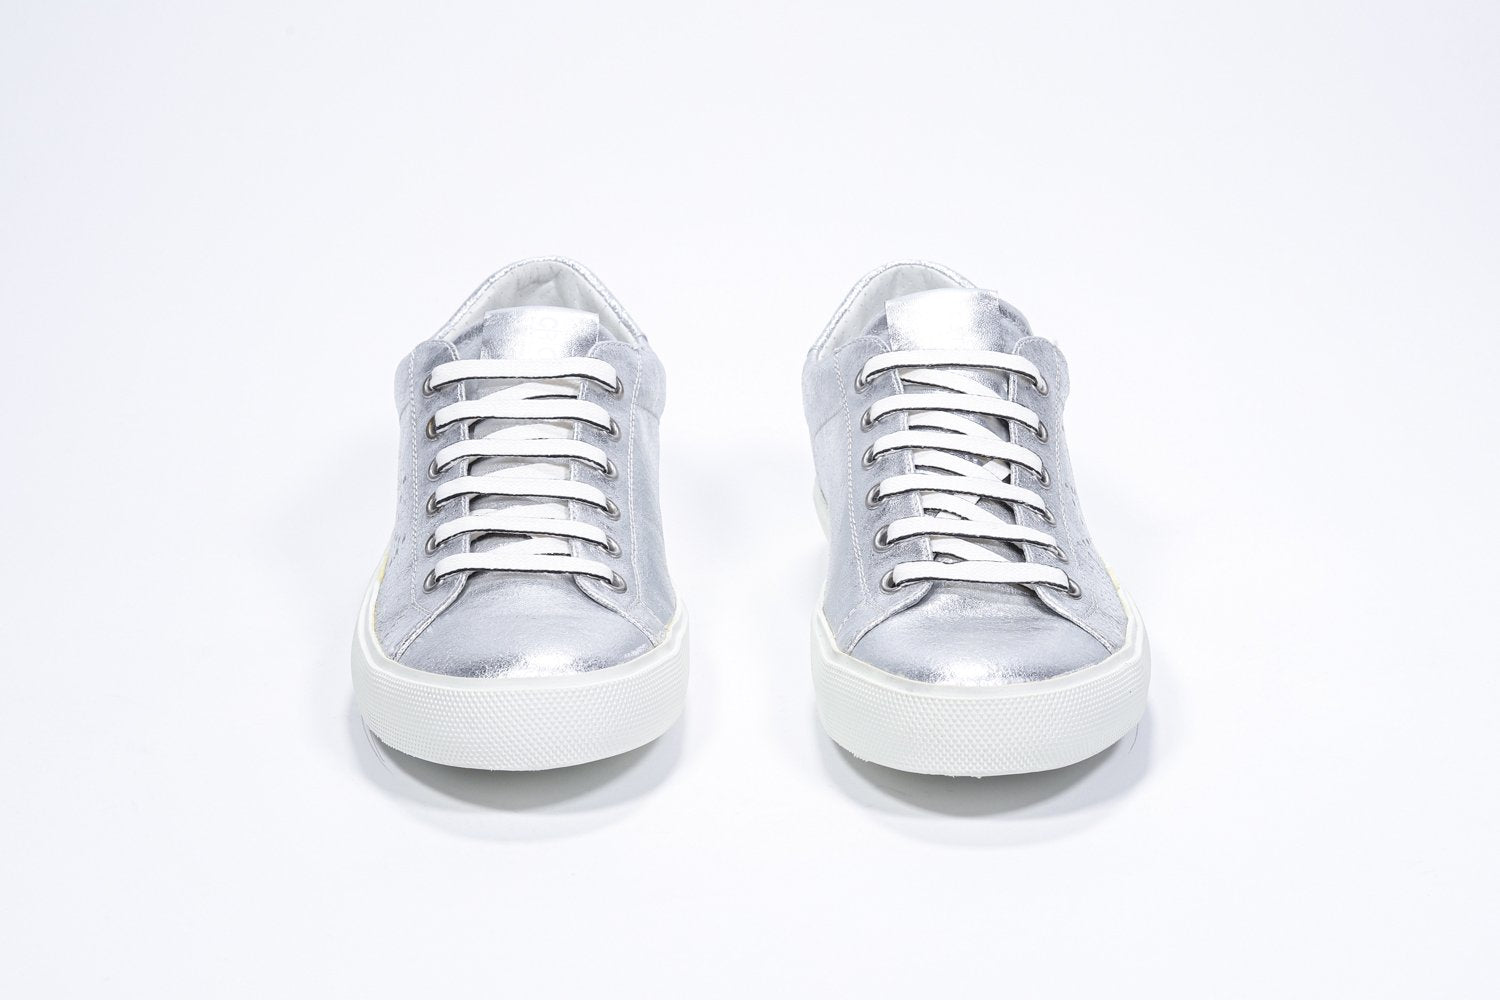 Vorderansicht des silbernen Low Top sneaker mit perforiertem Kronenlogo auf dem Obermaterial. Obermaterial aus Metallic-Leder und weiße Gummisohle.